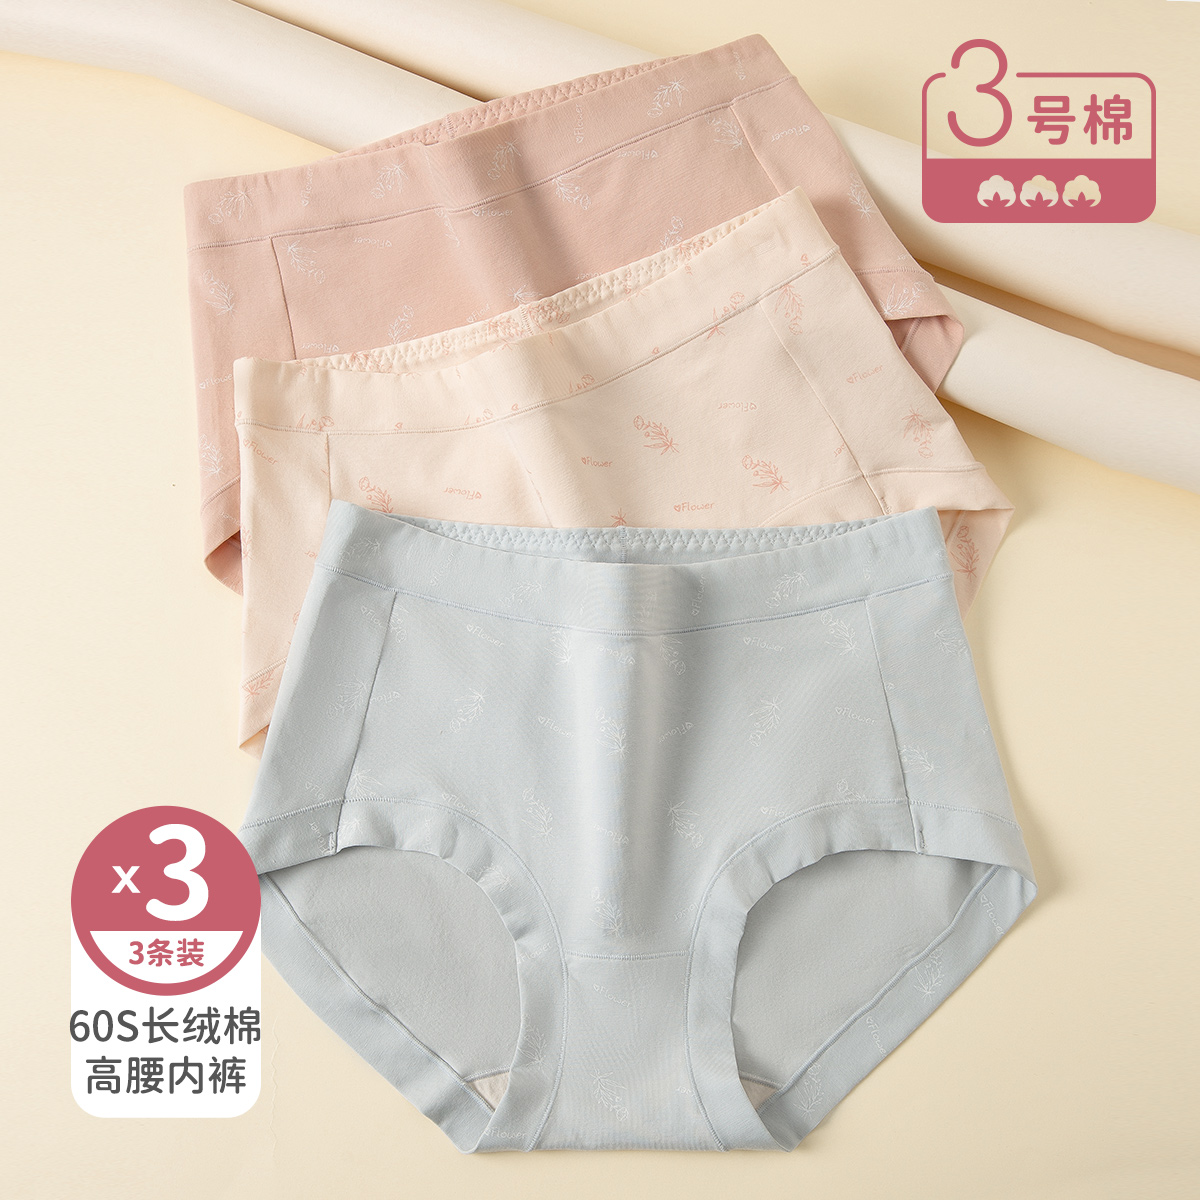 单色线顶瓜瓜 花朵女式高腰内裤3条装DNKWC-AOW33033-3